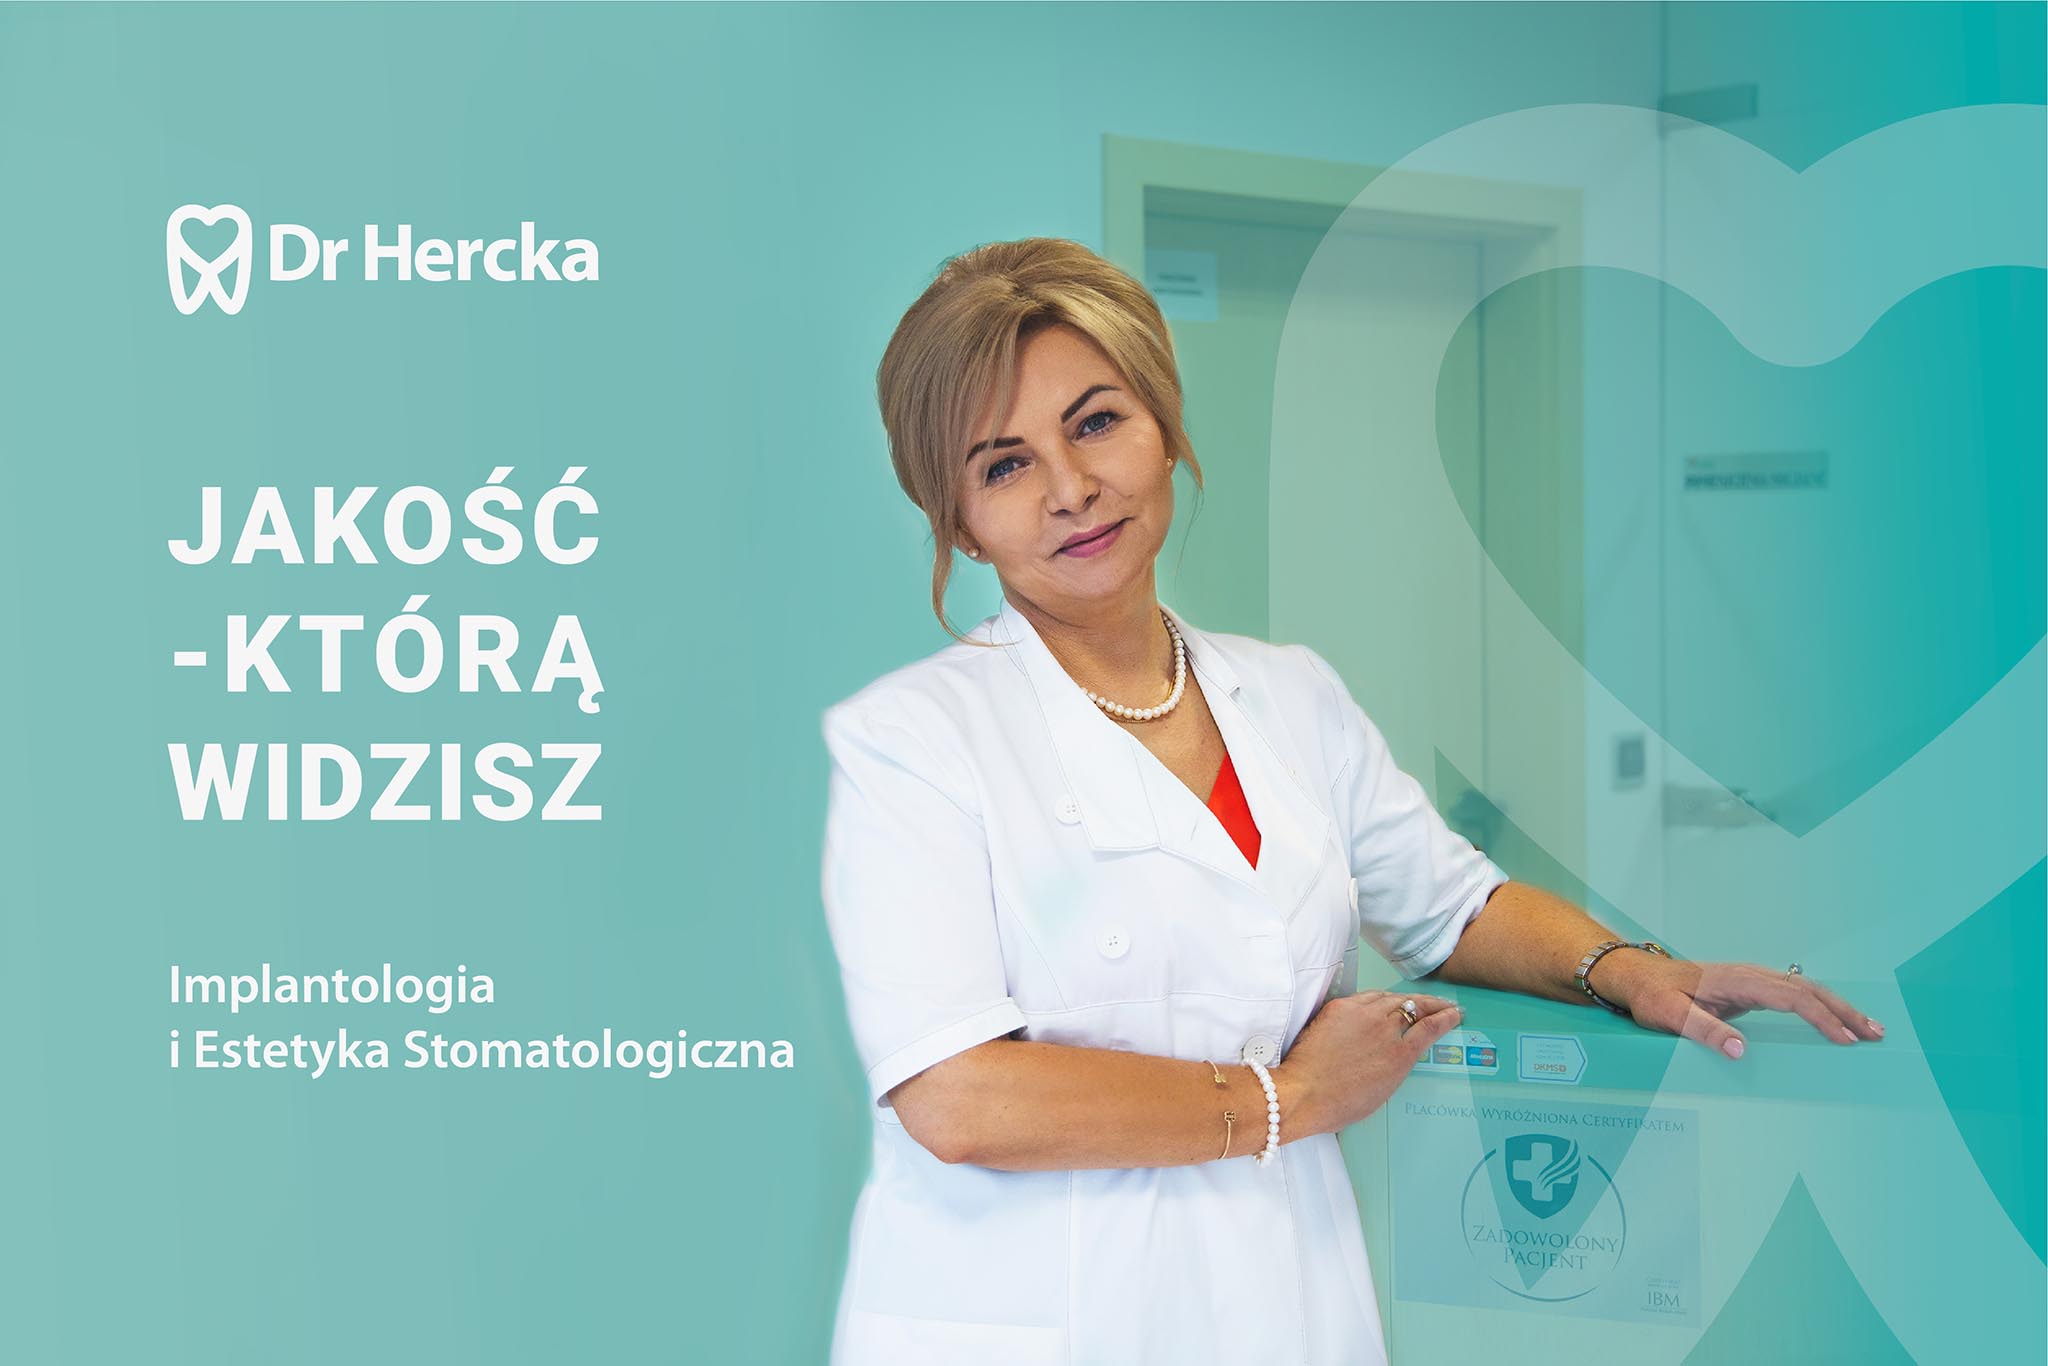 dr Hercka Gliwice - identyfikacja wizualna